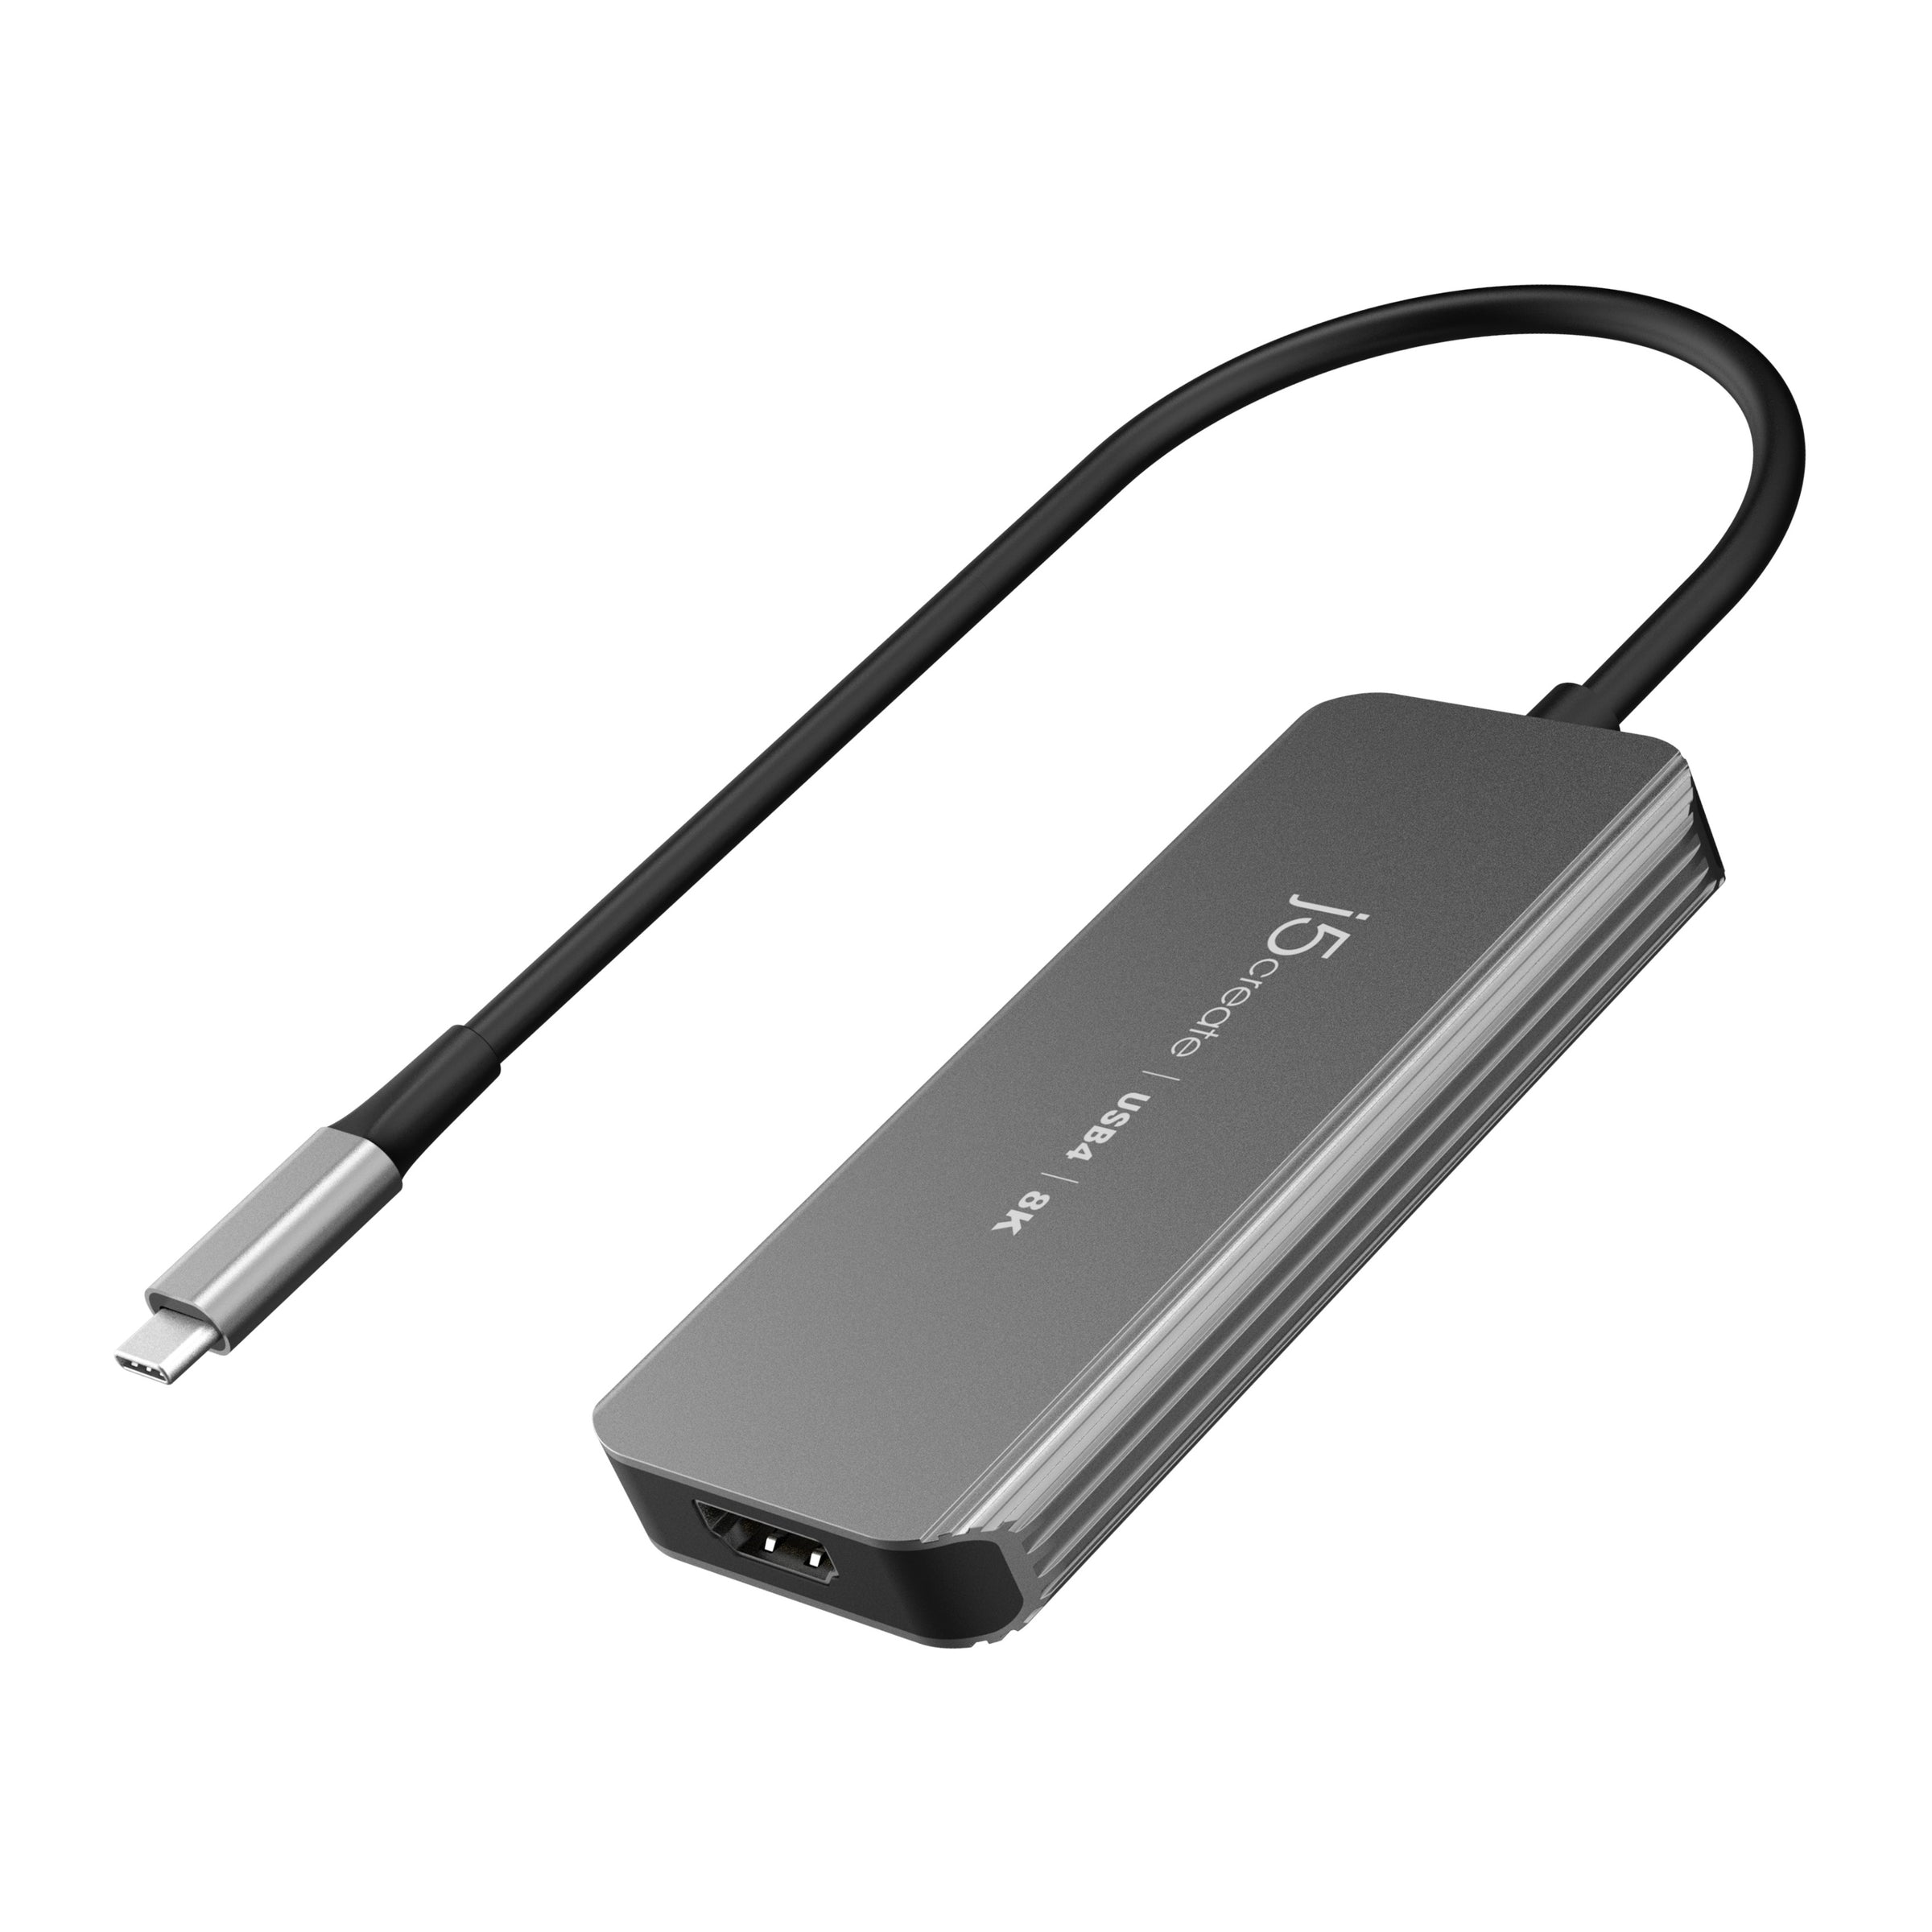 i-Tec Thunderbolt 3 / USB-C 4K HDMI LAN Nano Hub grey